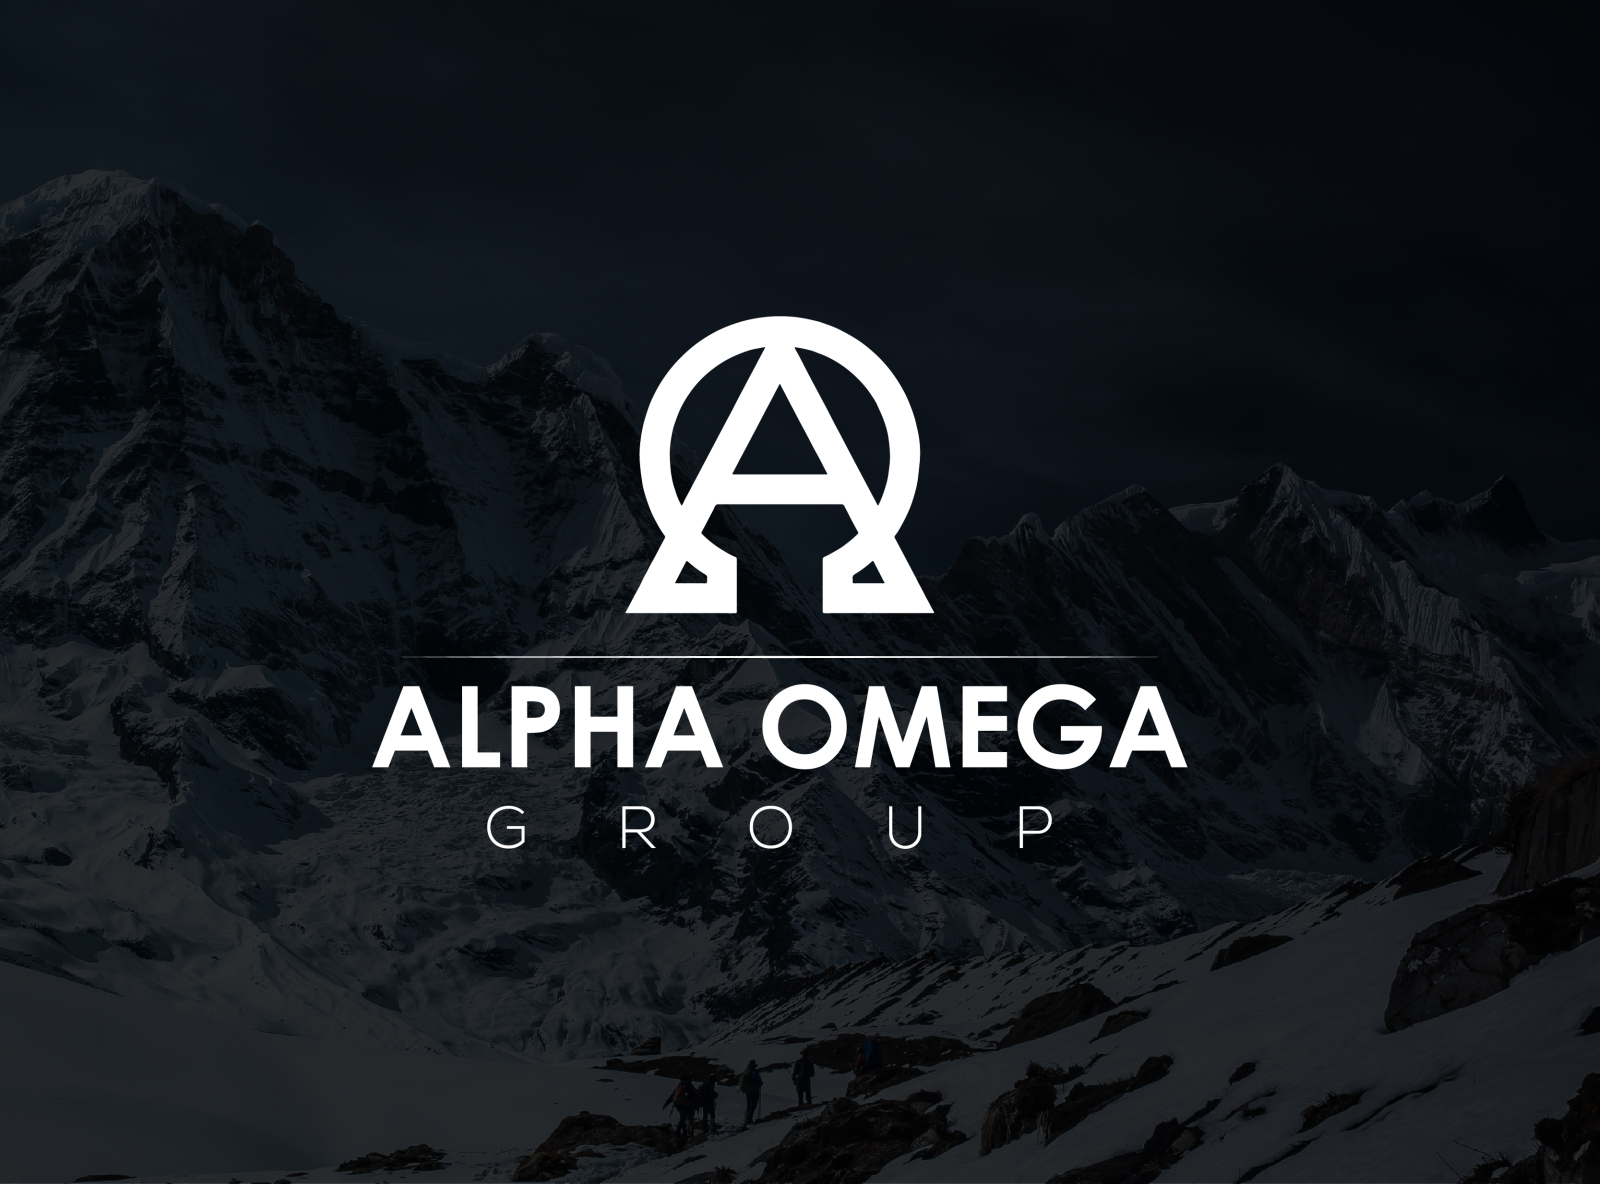 Omega logo, Alpha and Omega Symbol, symbols, text, monochrome png | PNGEgg